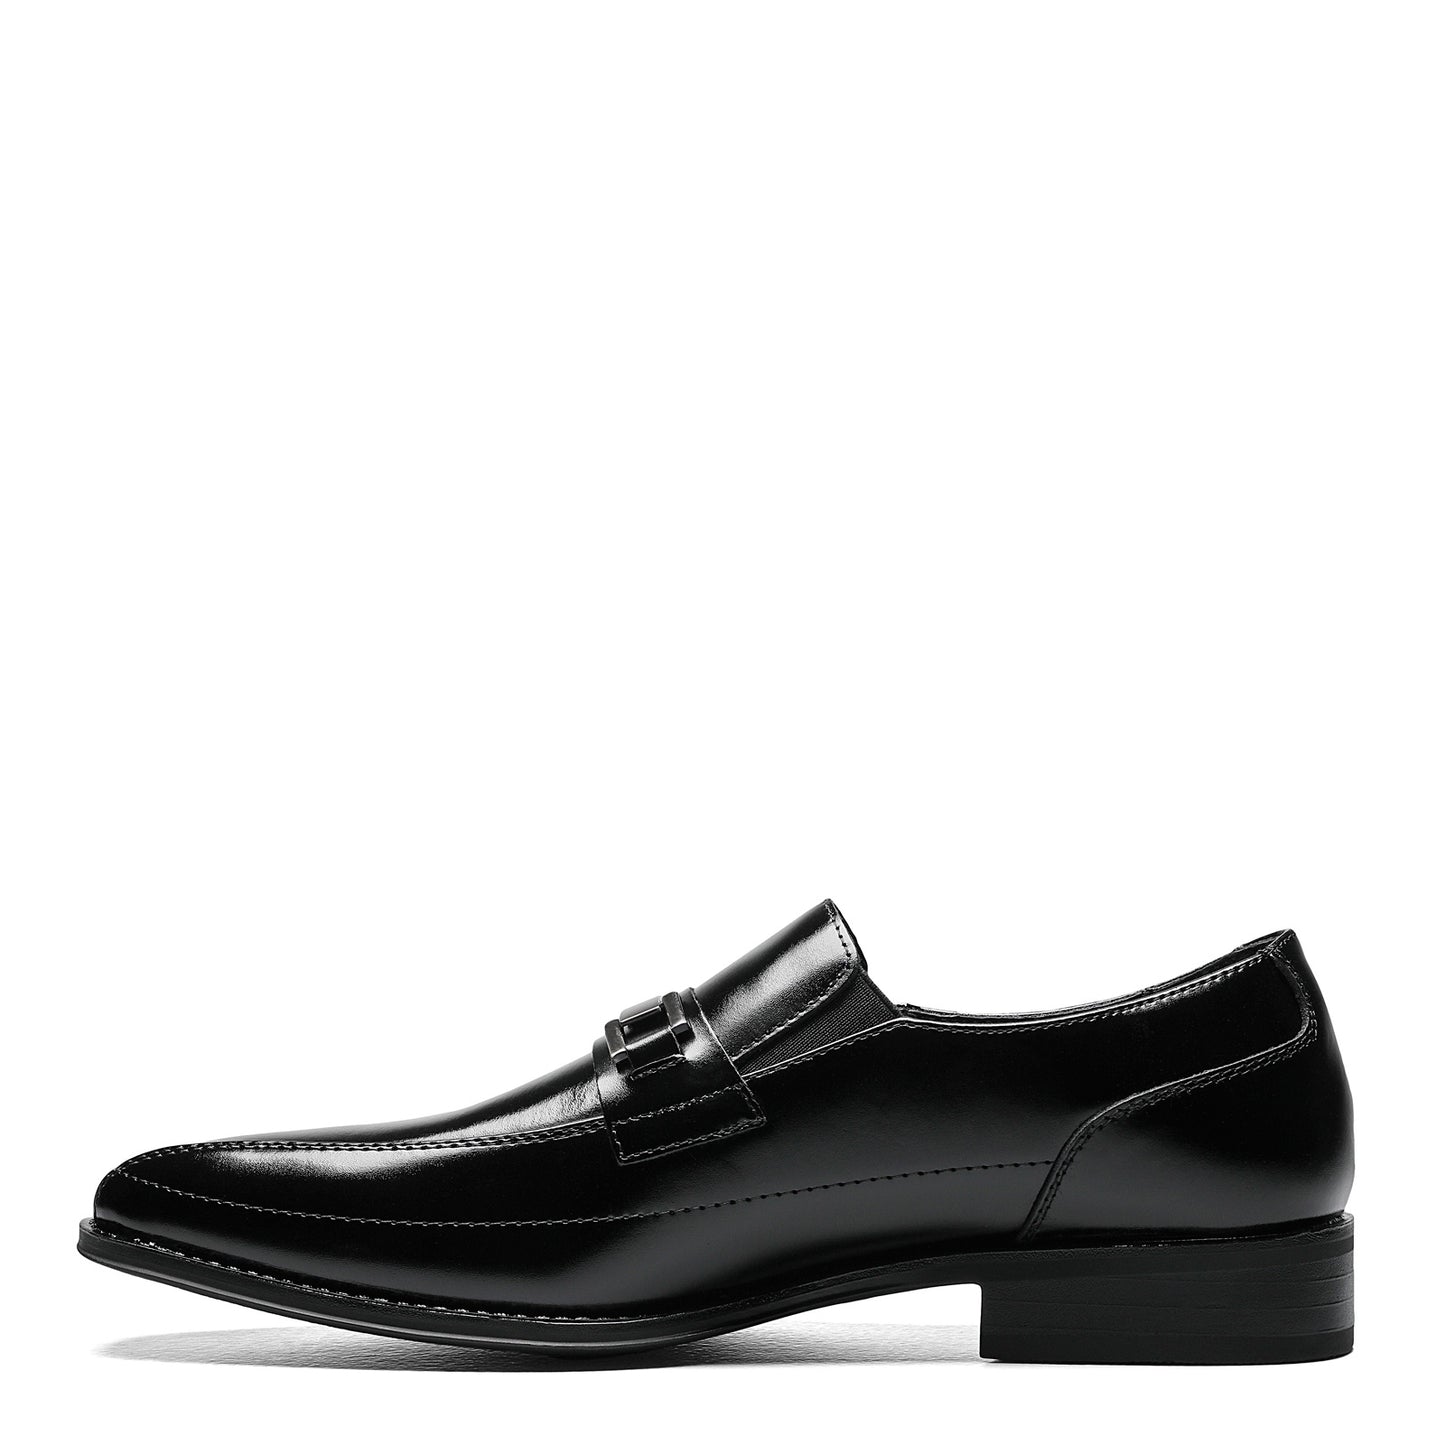 Peltz Shoes  Men's Stacy Adams Wakefield Loafer BLACK 20141-001